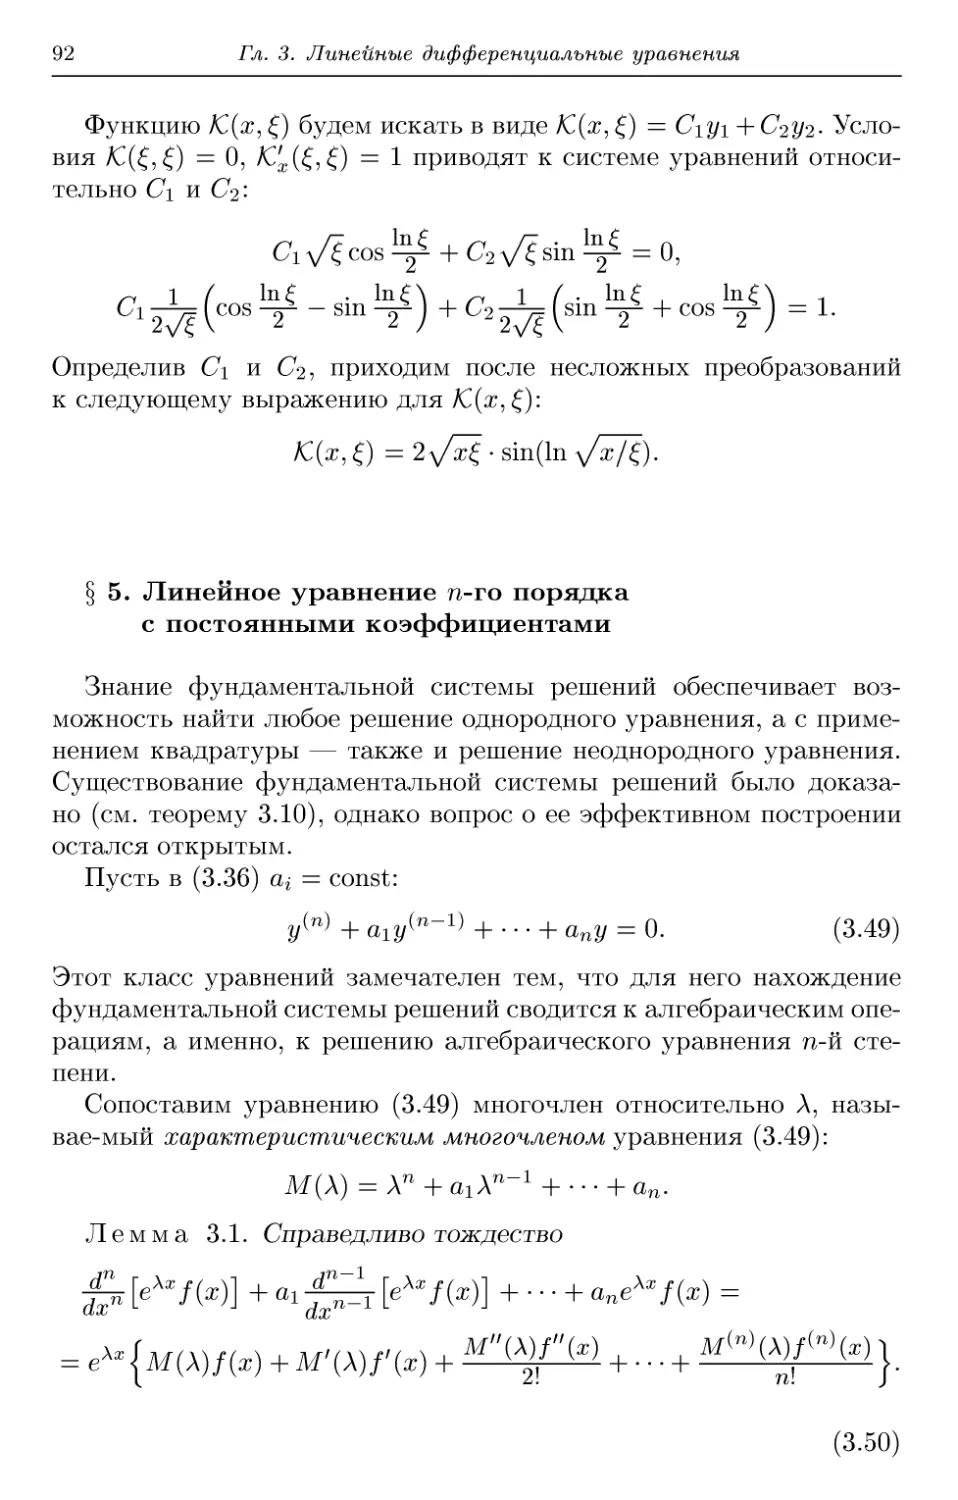 § 5. Линейное уравнение n-го порядка с постоянными коэффициентами